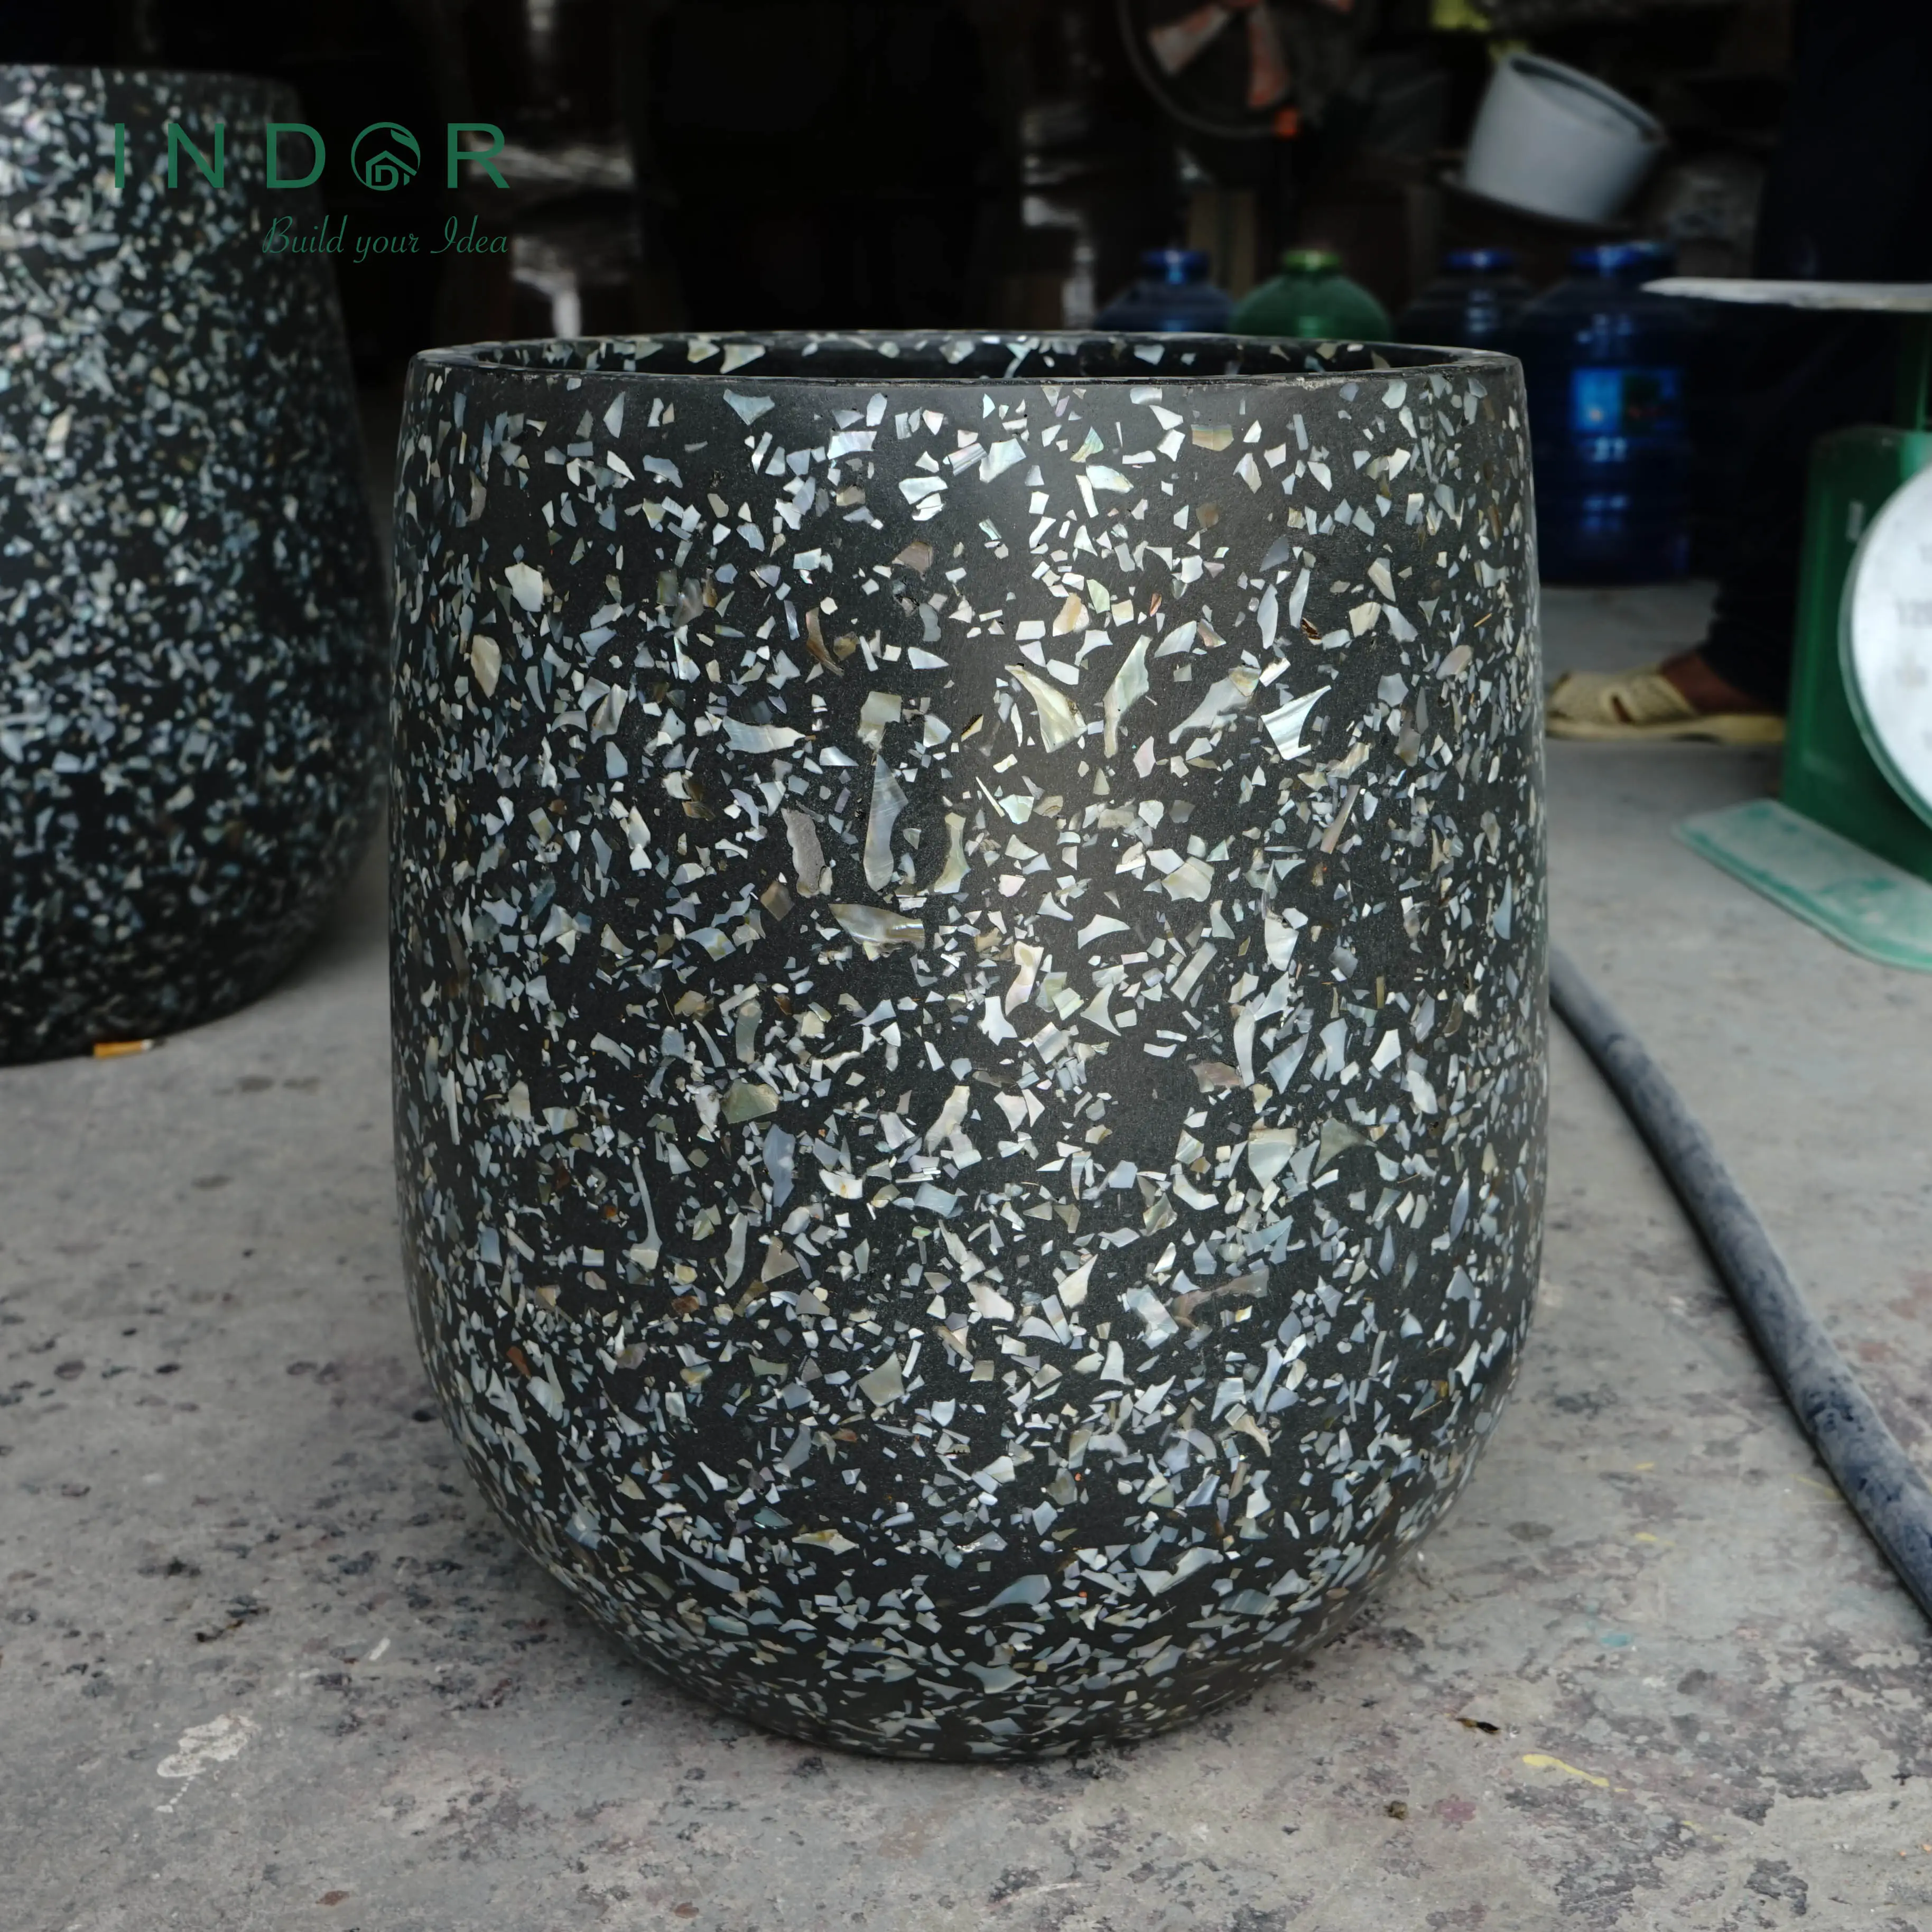 13kg 공 모양 홈 베트남 정원 용품 섬유석 컬렉션 19 세트 화분 파종기 실내 검은 꽃병 식물 화분